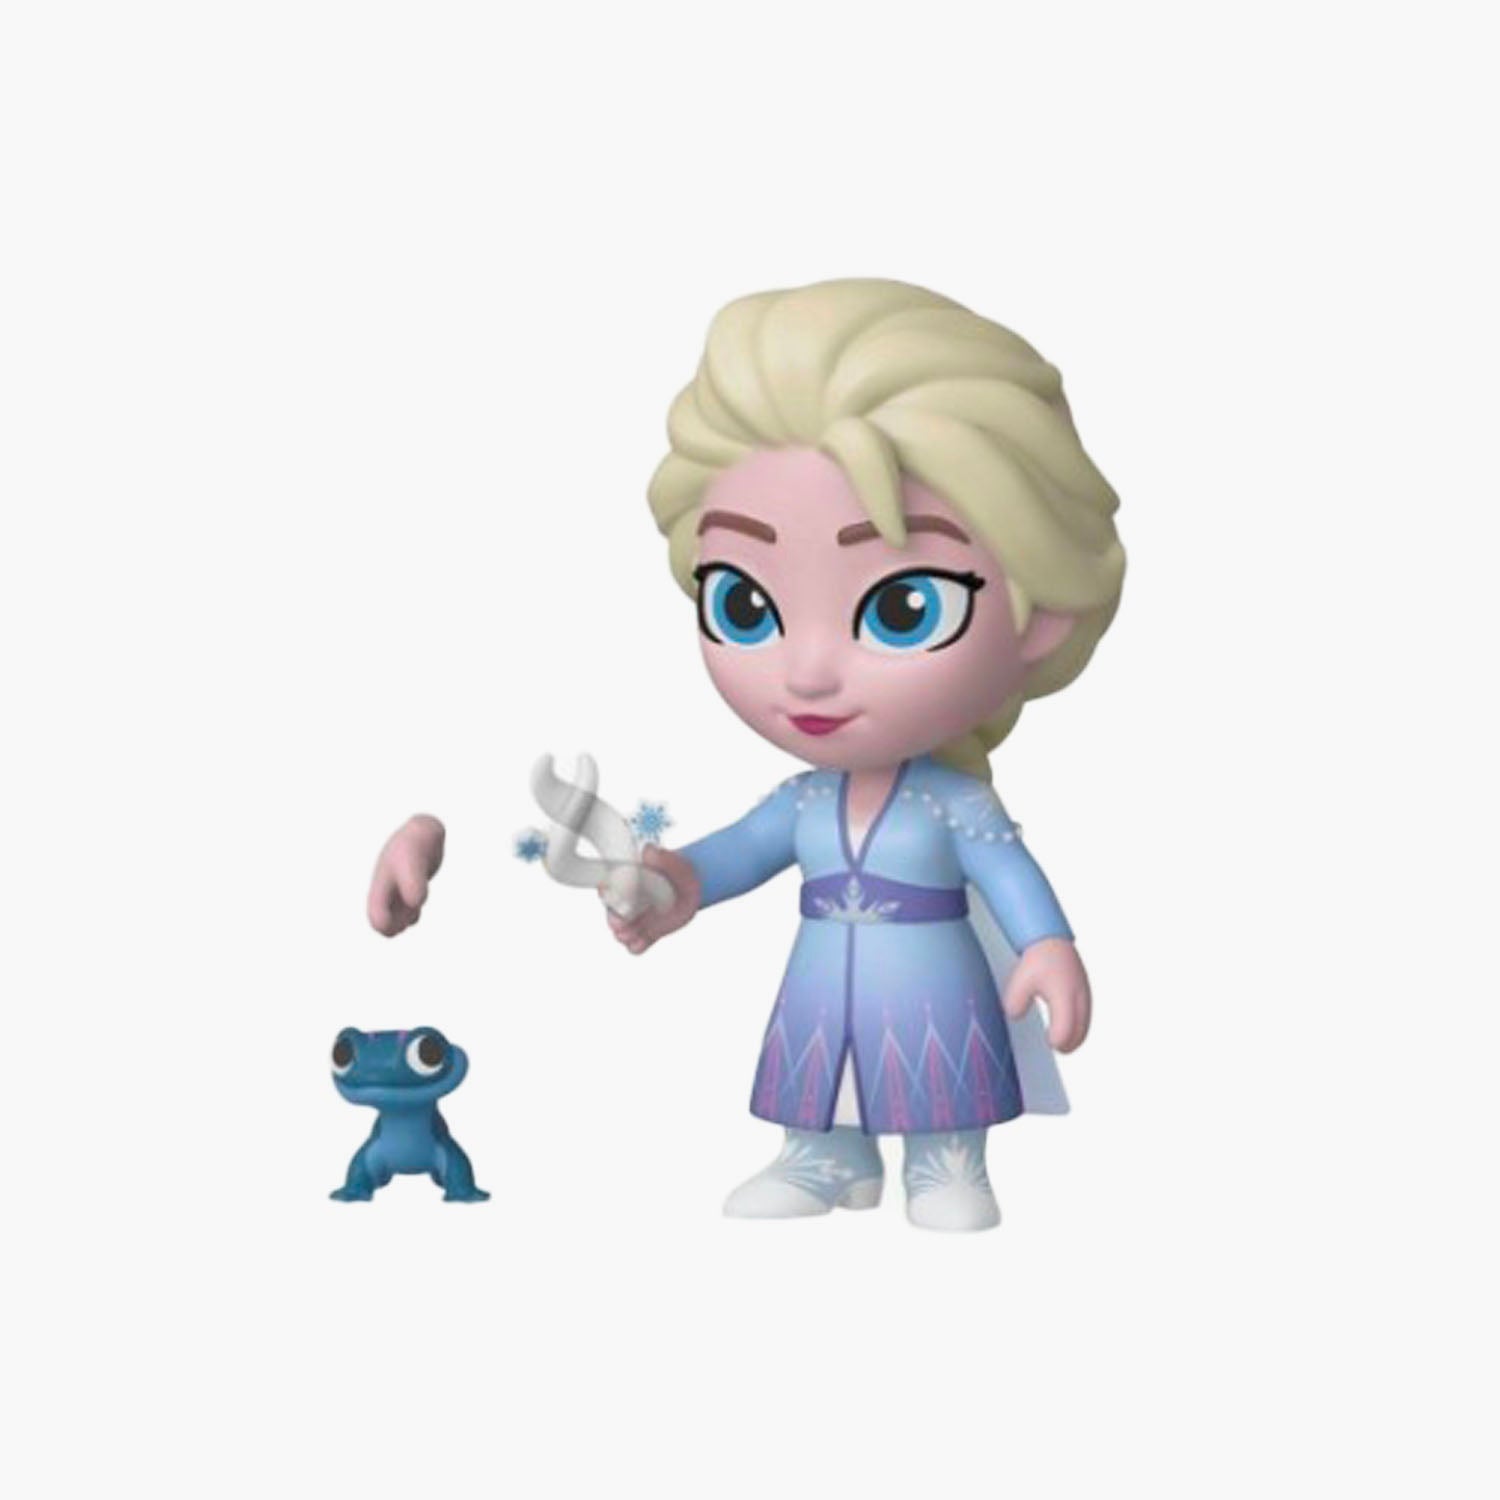 Figurine Elsa La Reine des neiges II